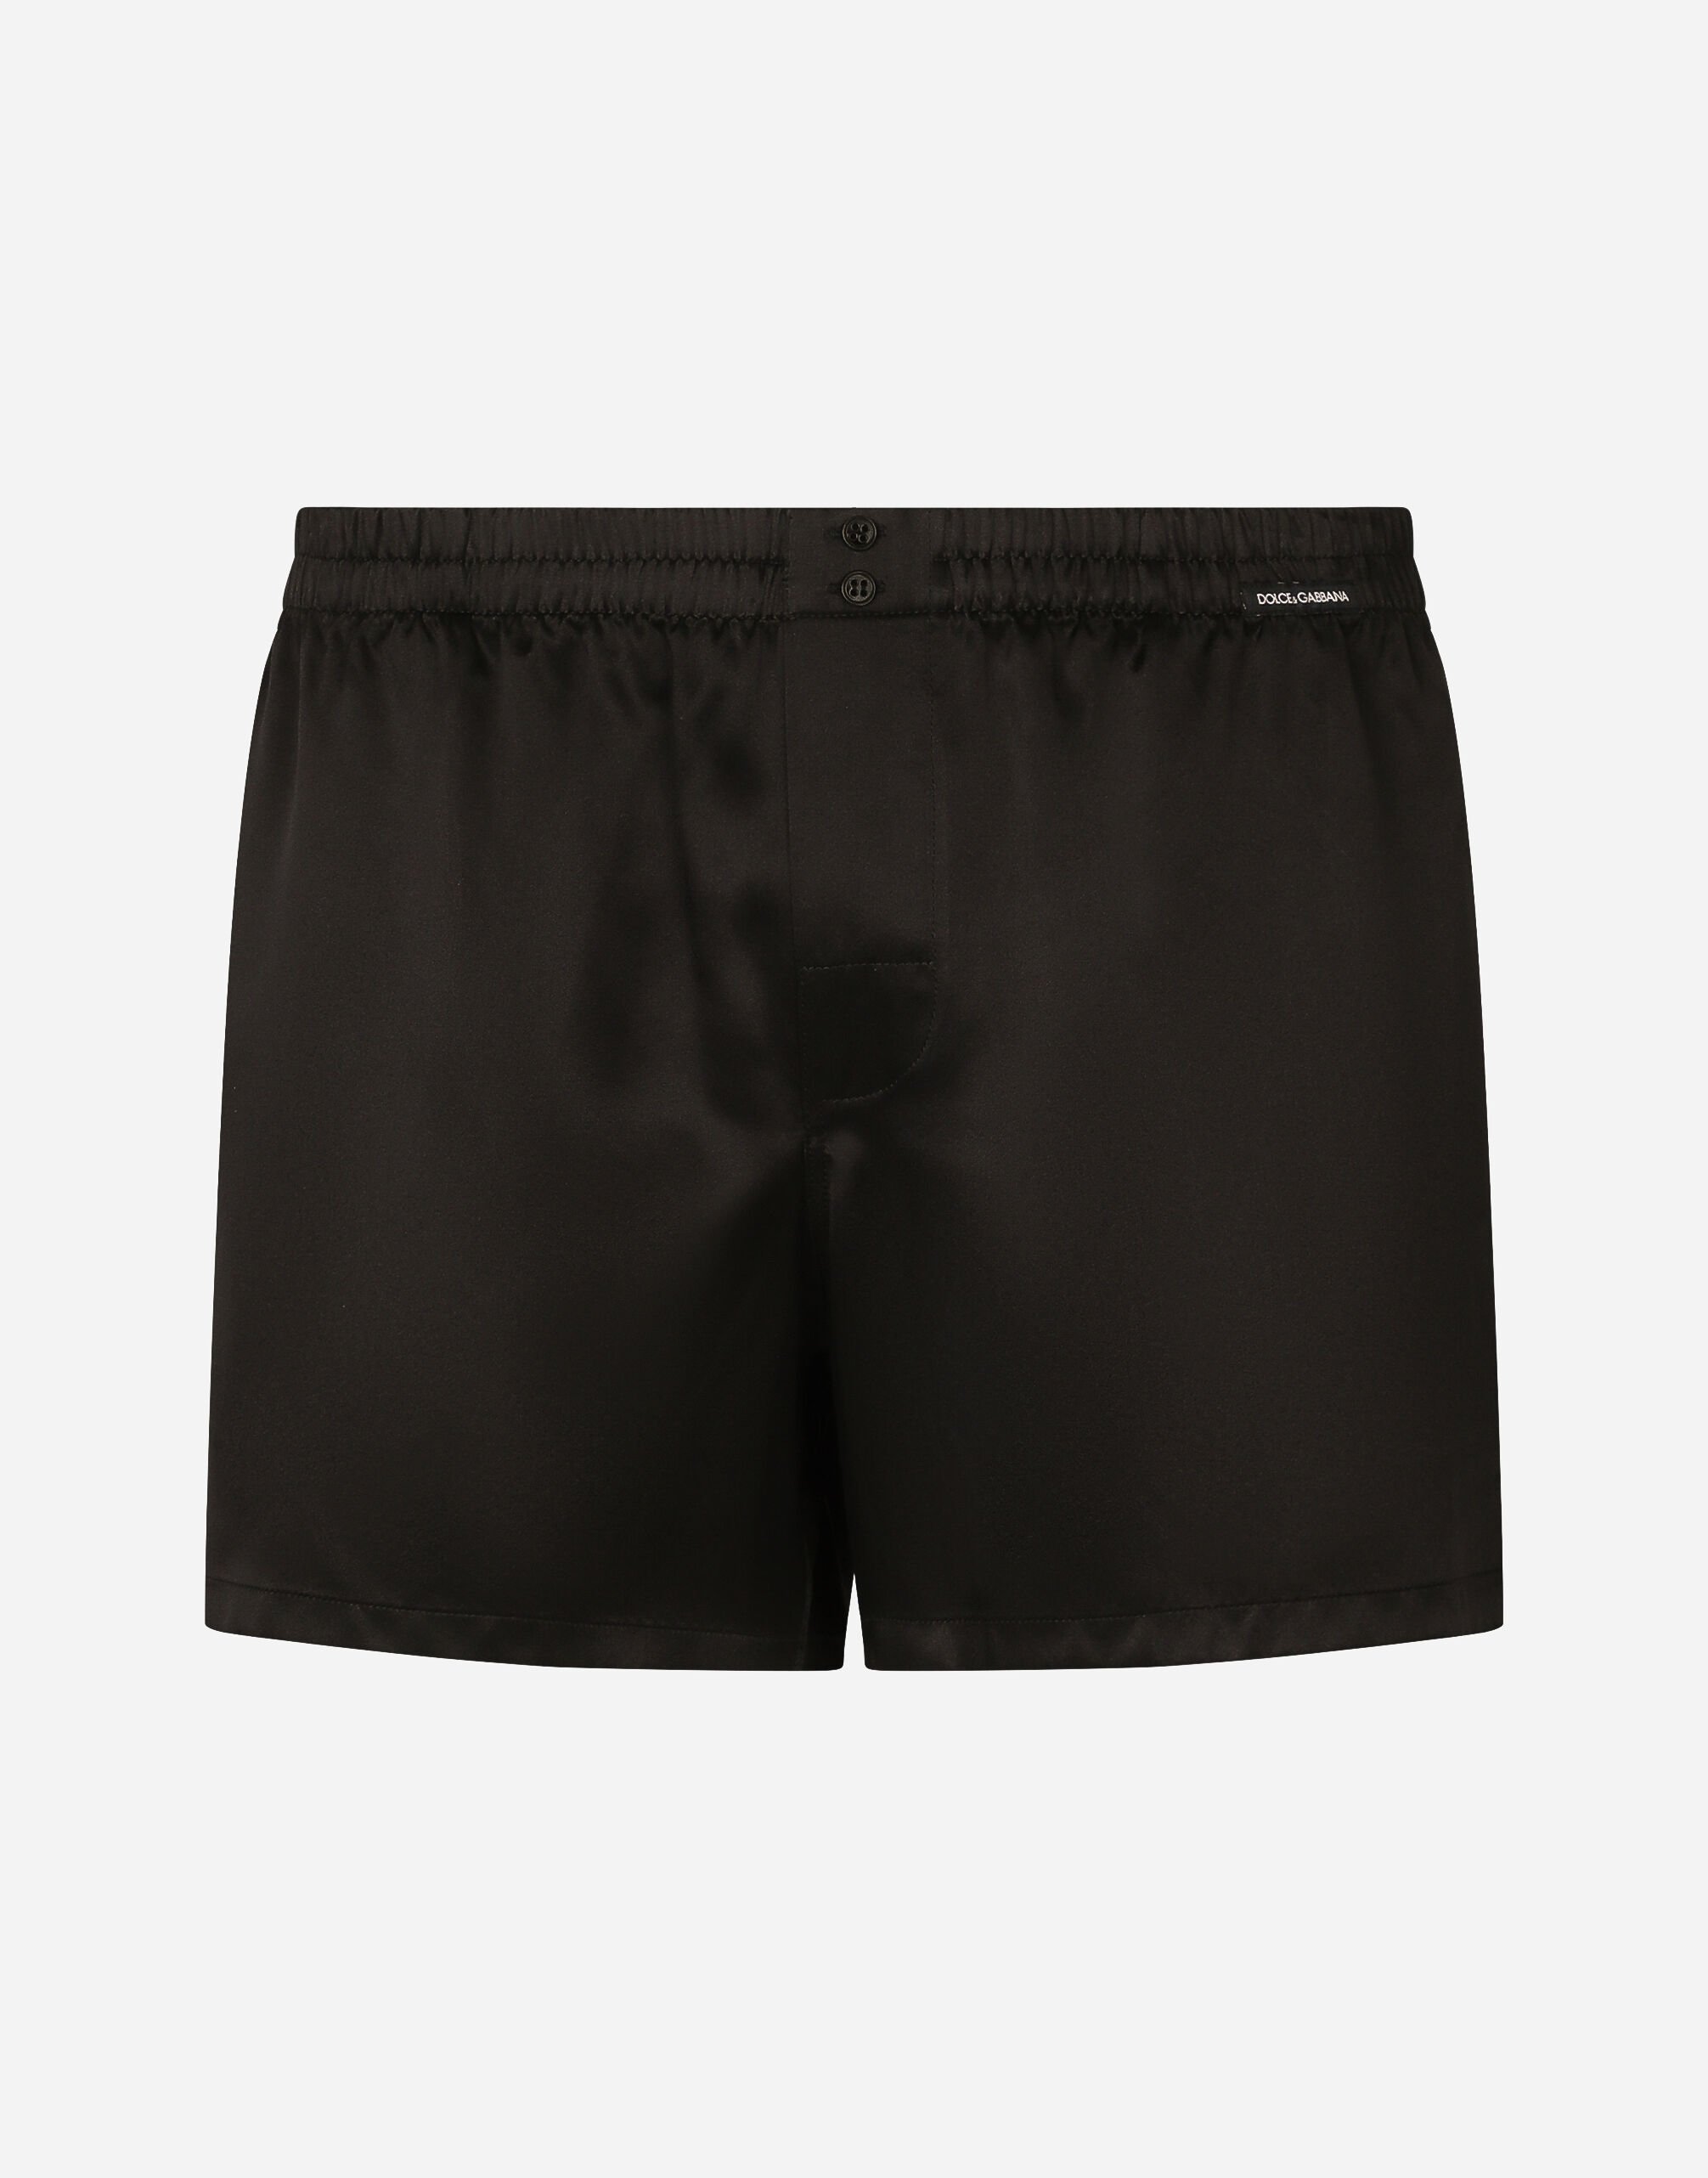 Dolce & Gabbana Silk shorts with logo label Black M9C03JONN95